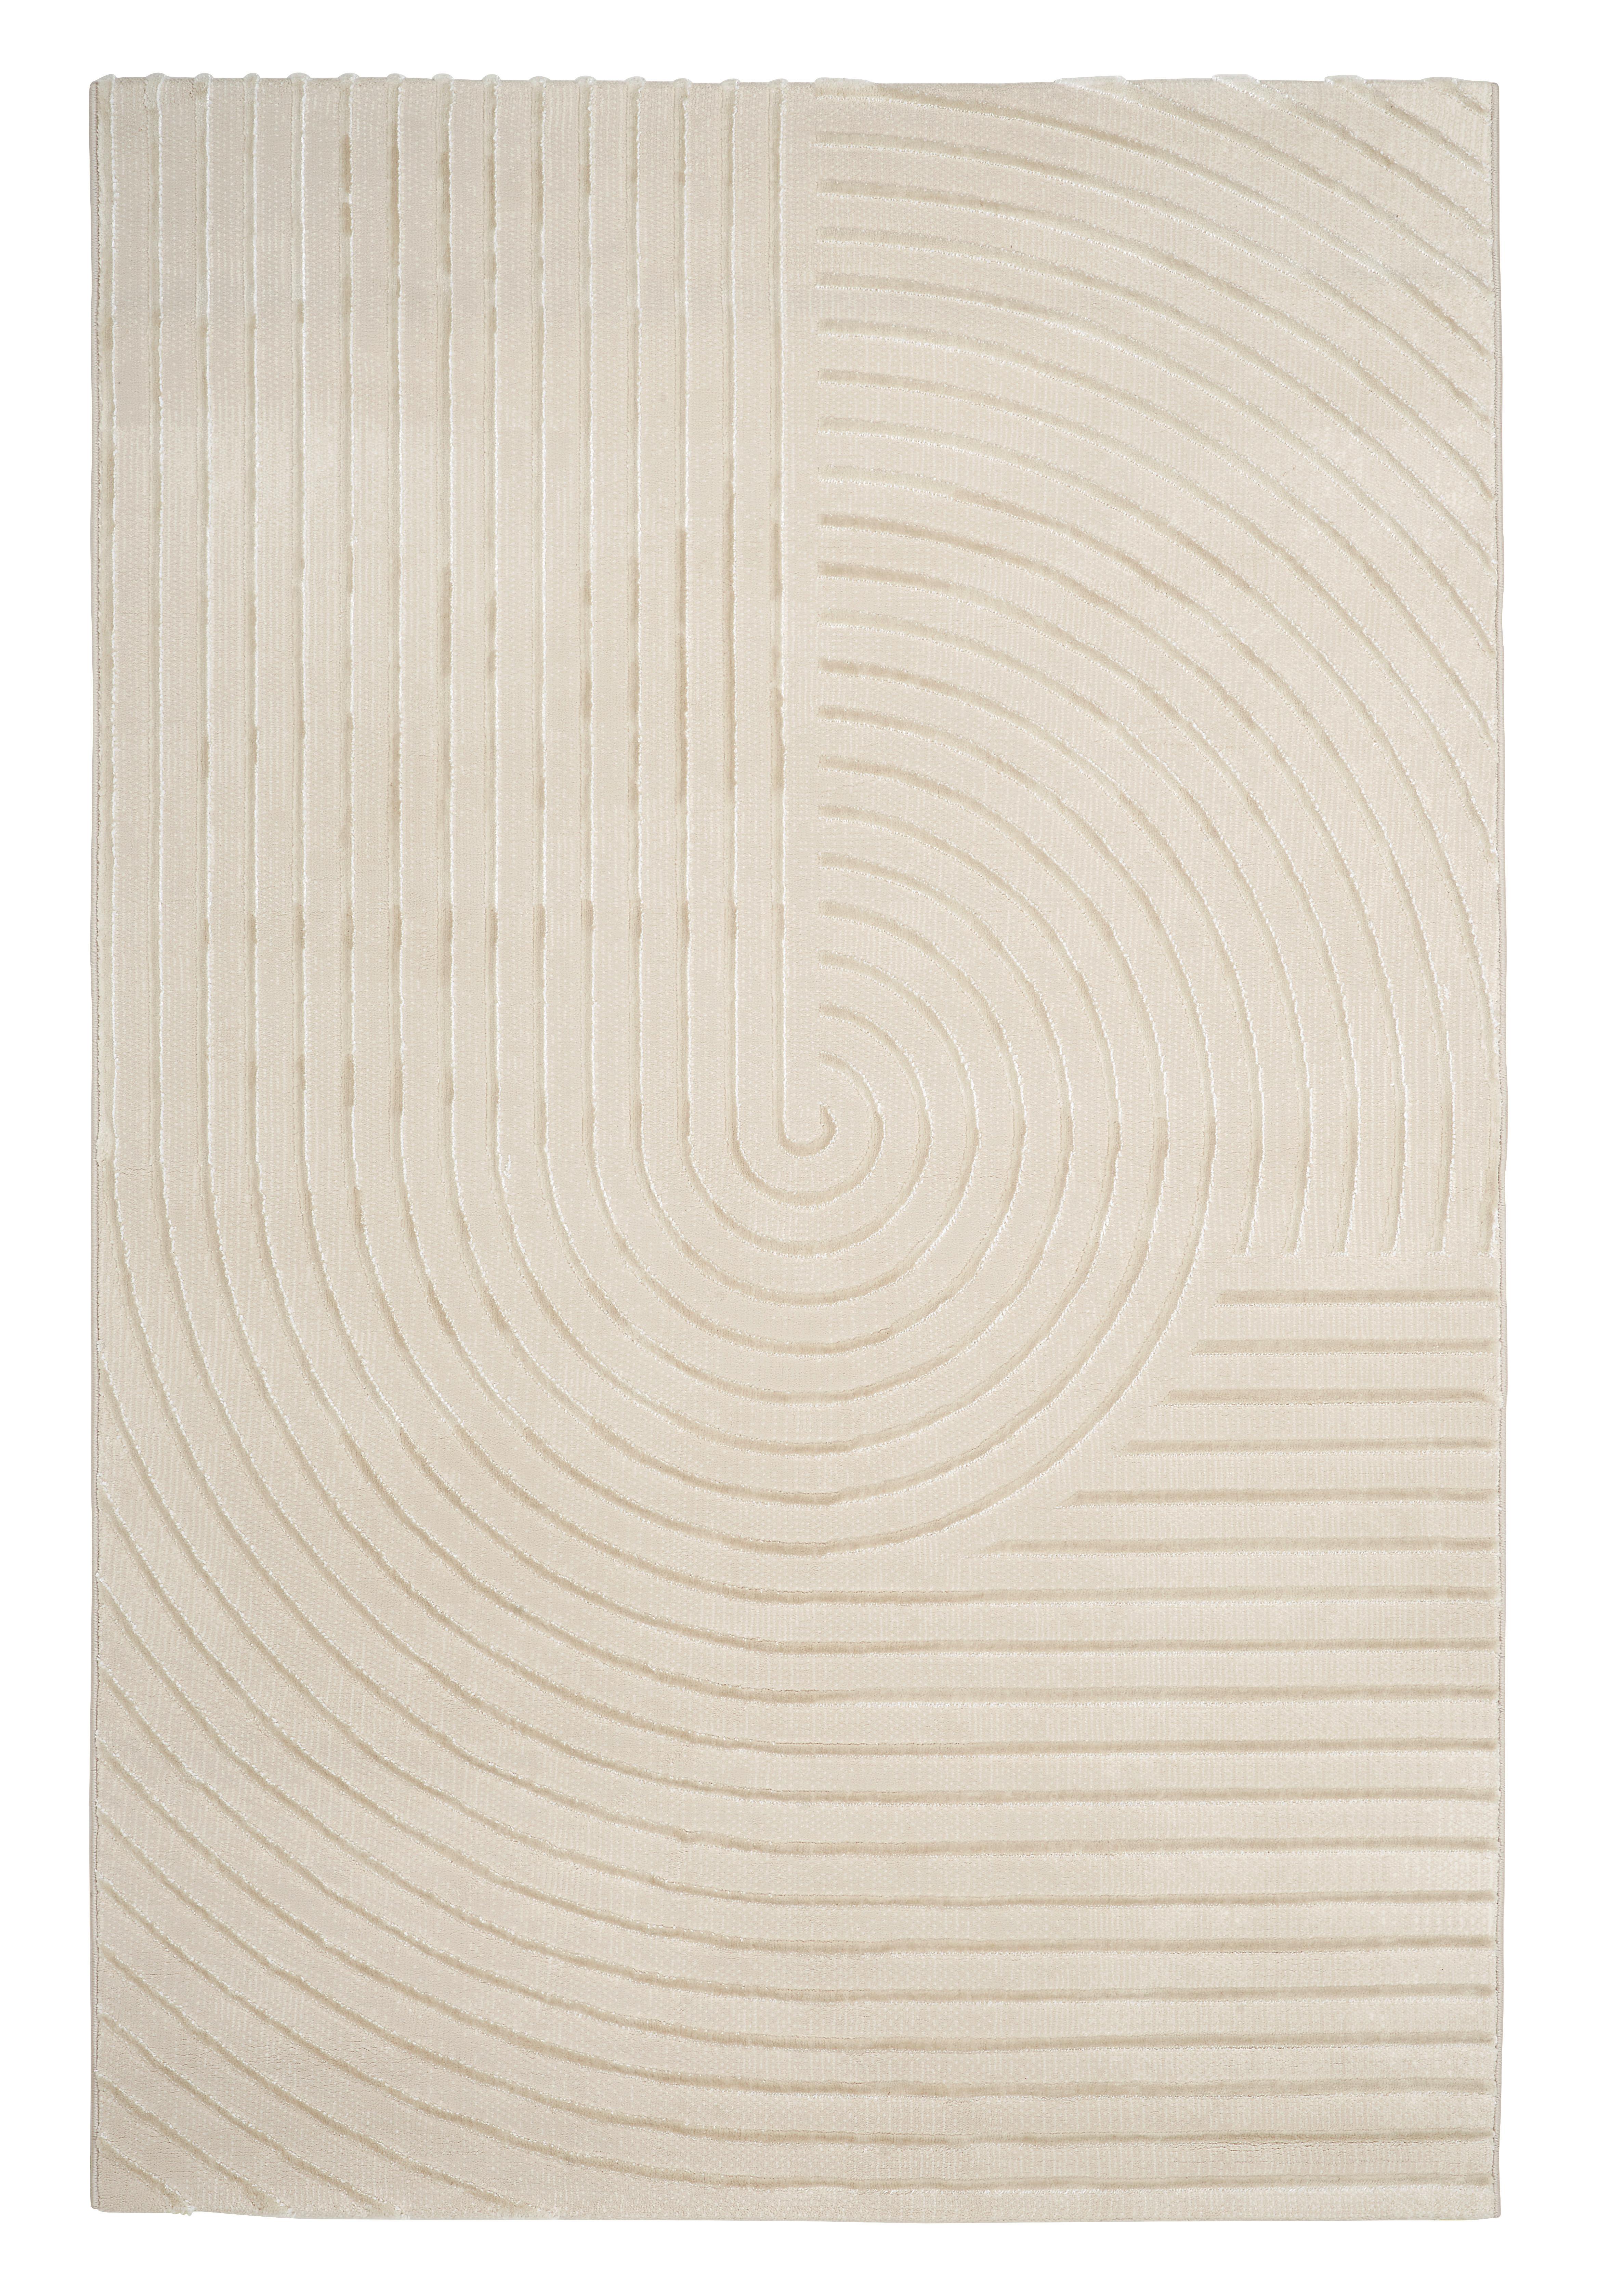 Webteppich Beige Jeremy 160x230 cm mit Streifen - Beige, ROMANTIK / LANDHAUS, Textil (160/230cm) - James Wood